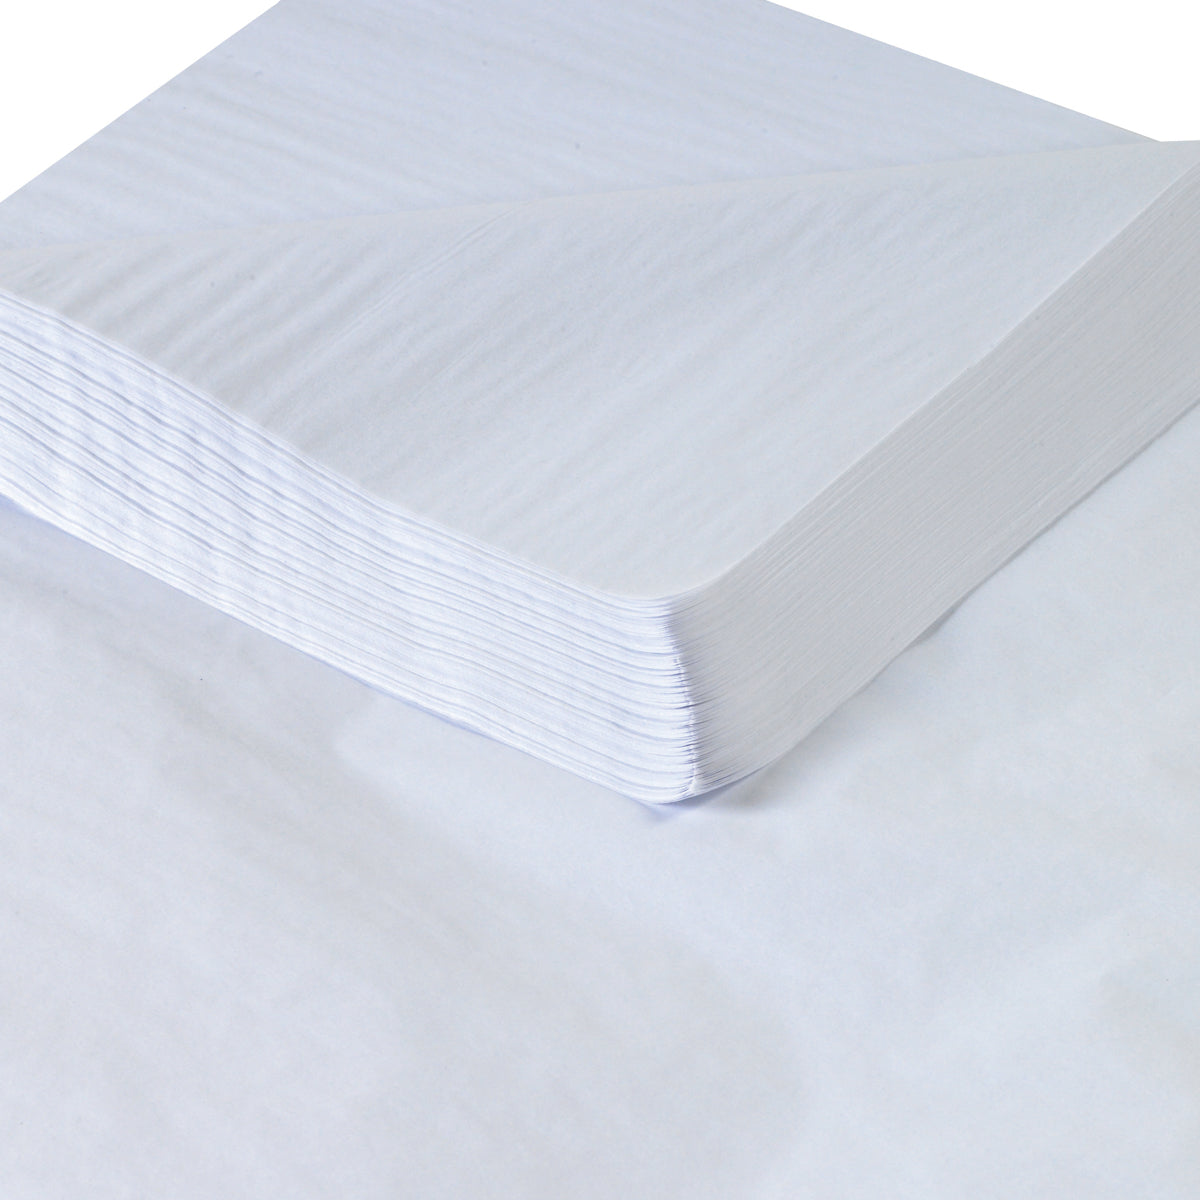 20 x 30 White Tissue Wrap 480/Case